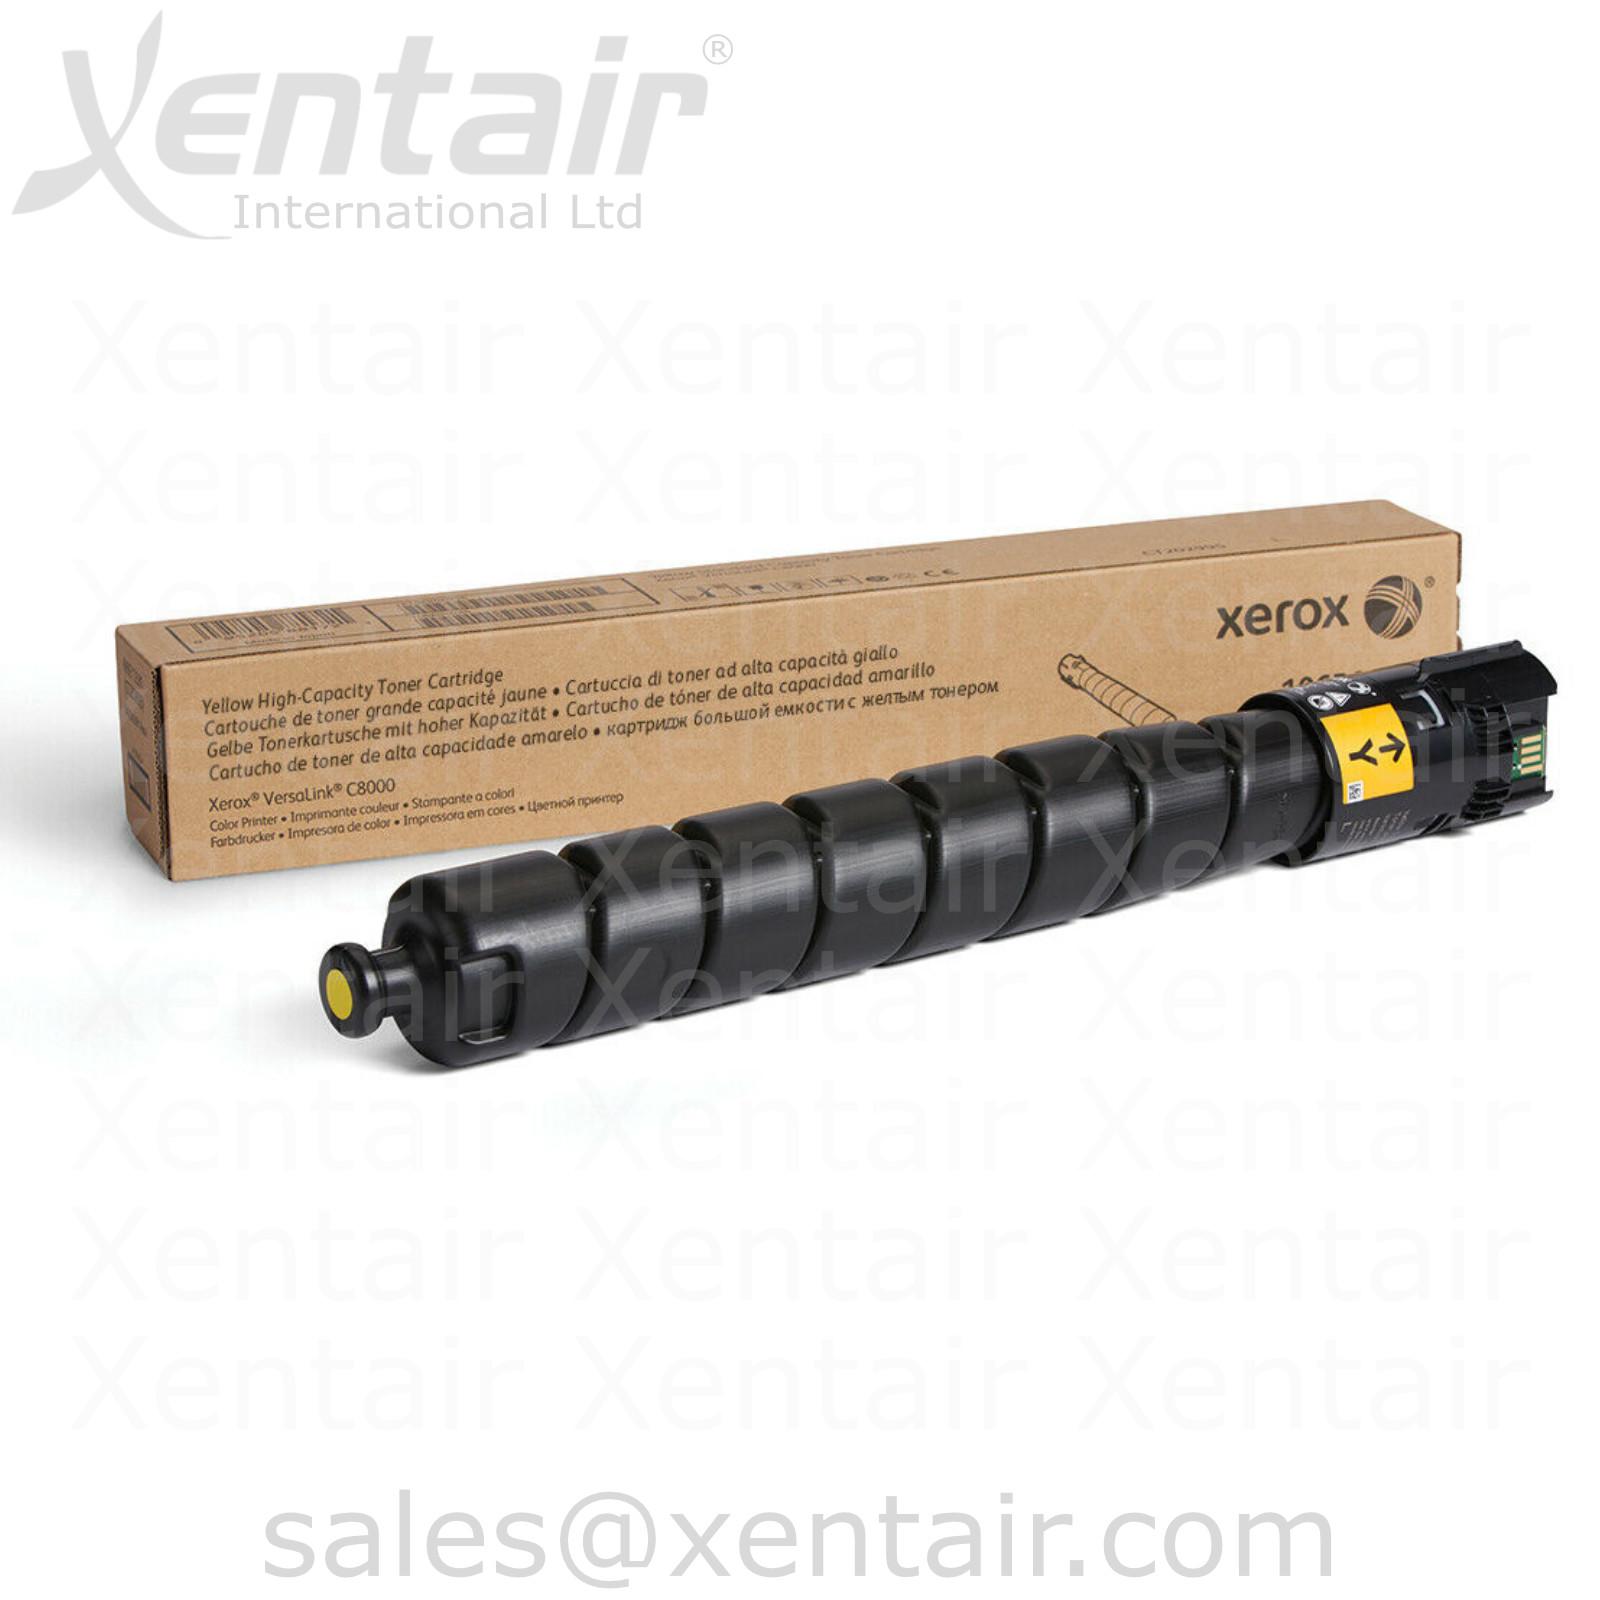 Xerox® VersaLink® C8000 High Capacity Yellow Toner Cartridge 106R04052